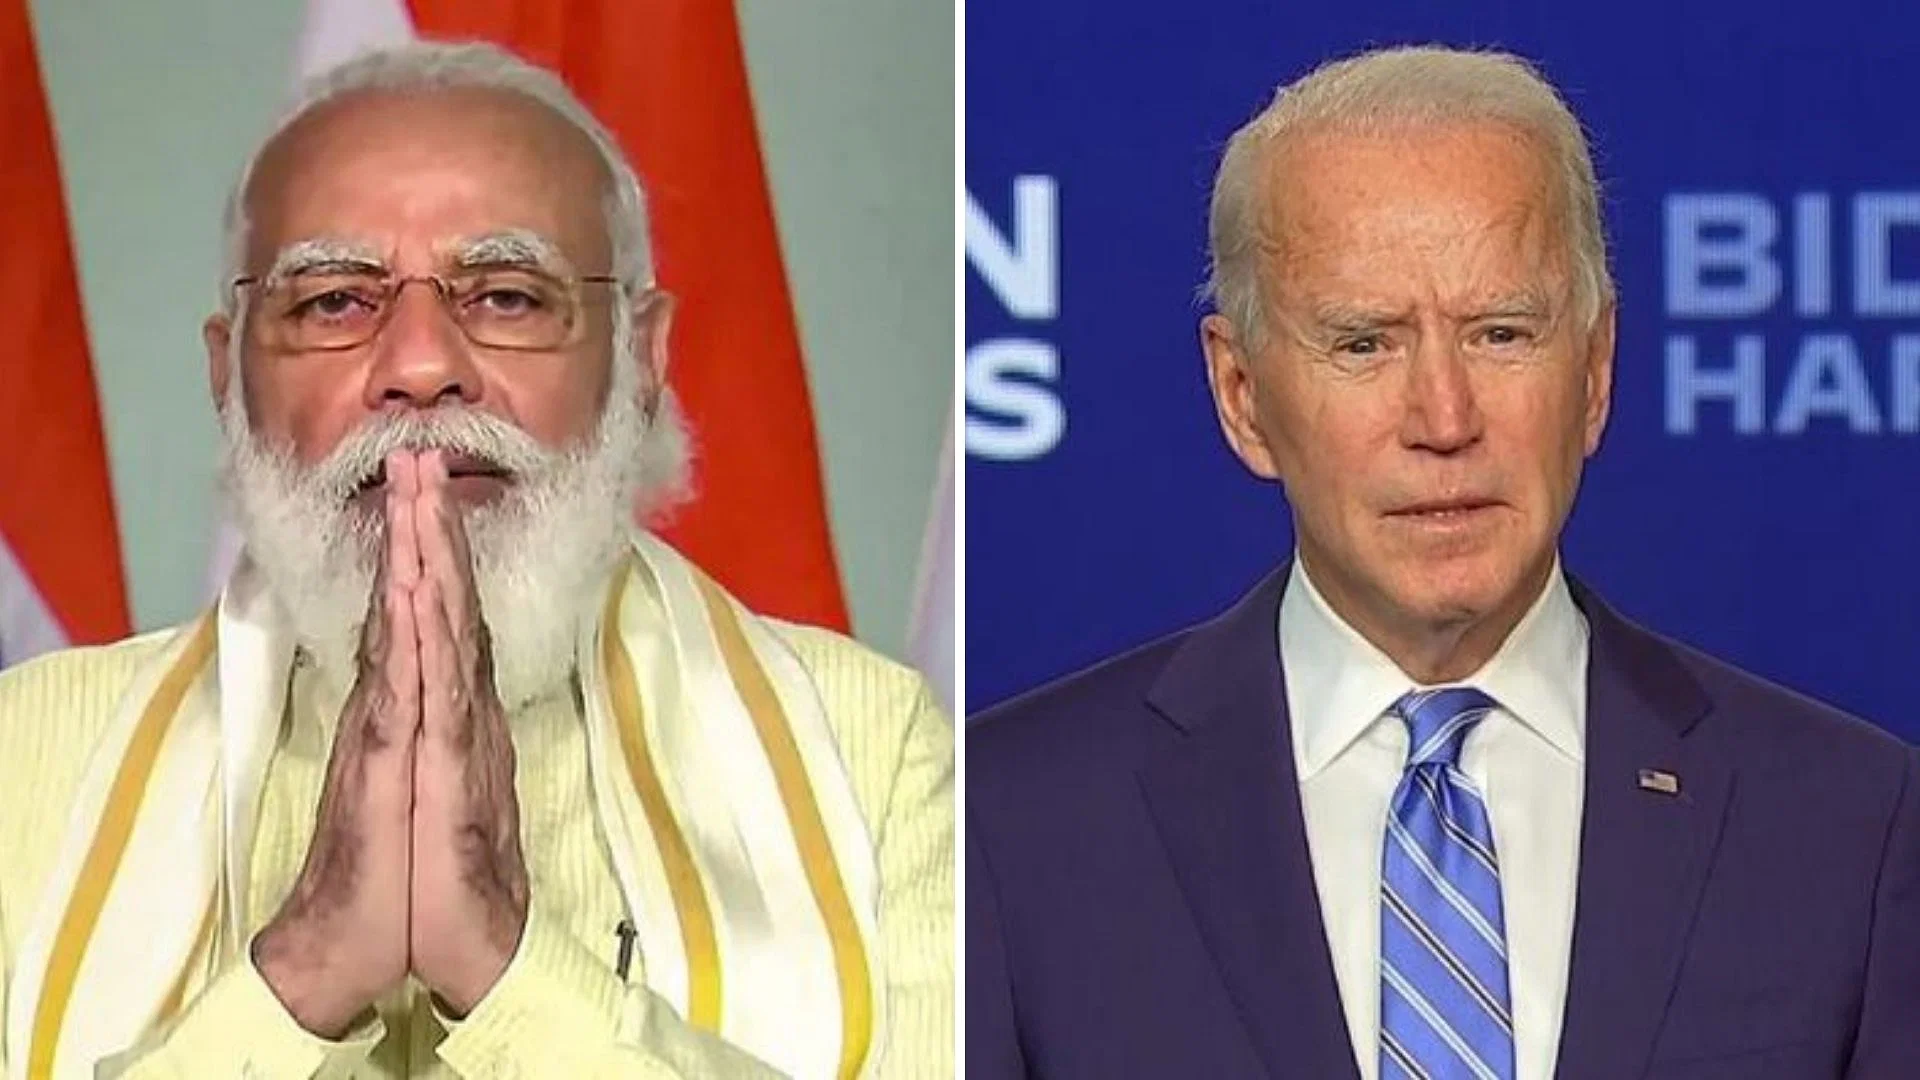 President Joe Biden and Indian Prime Minister Narendra Modi